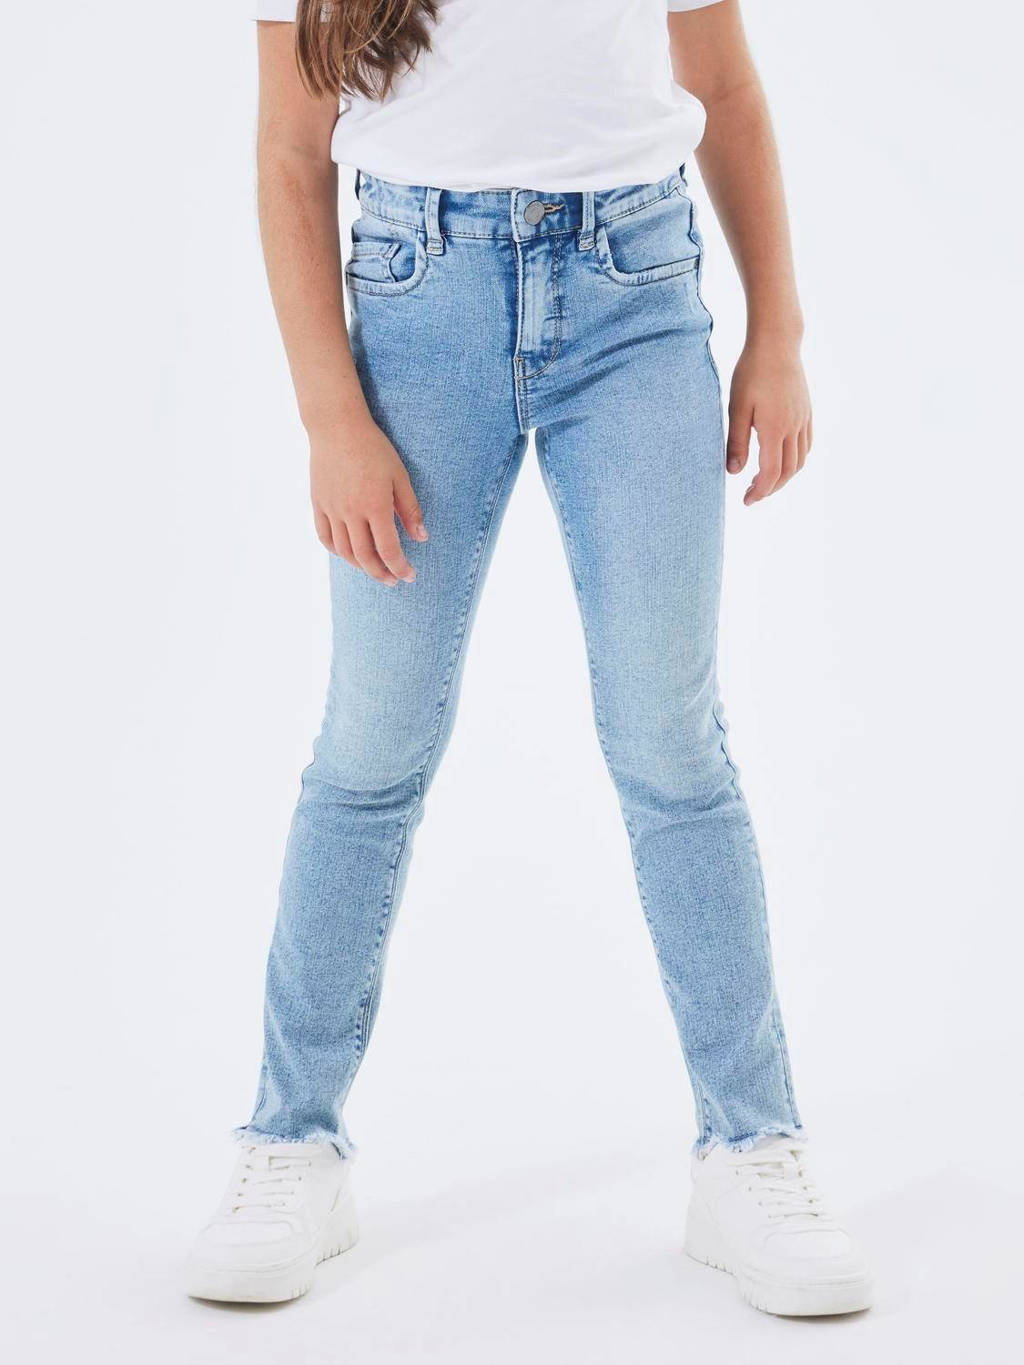 skinny jeans NKFPOLLY light blue denim